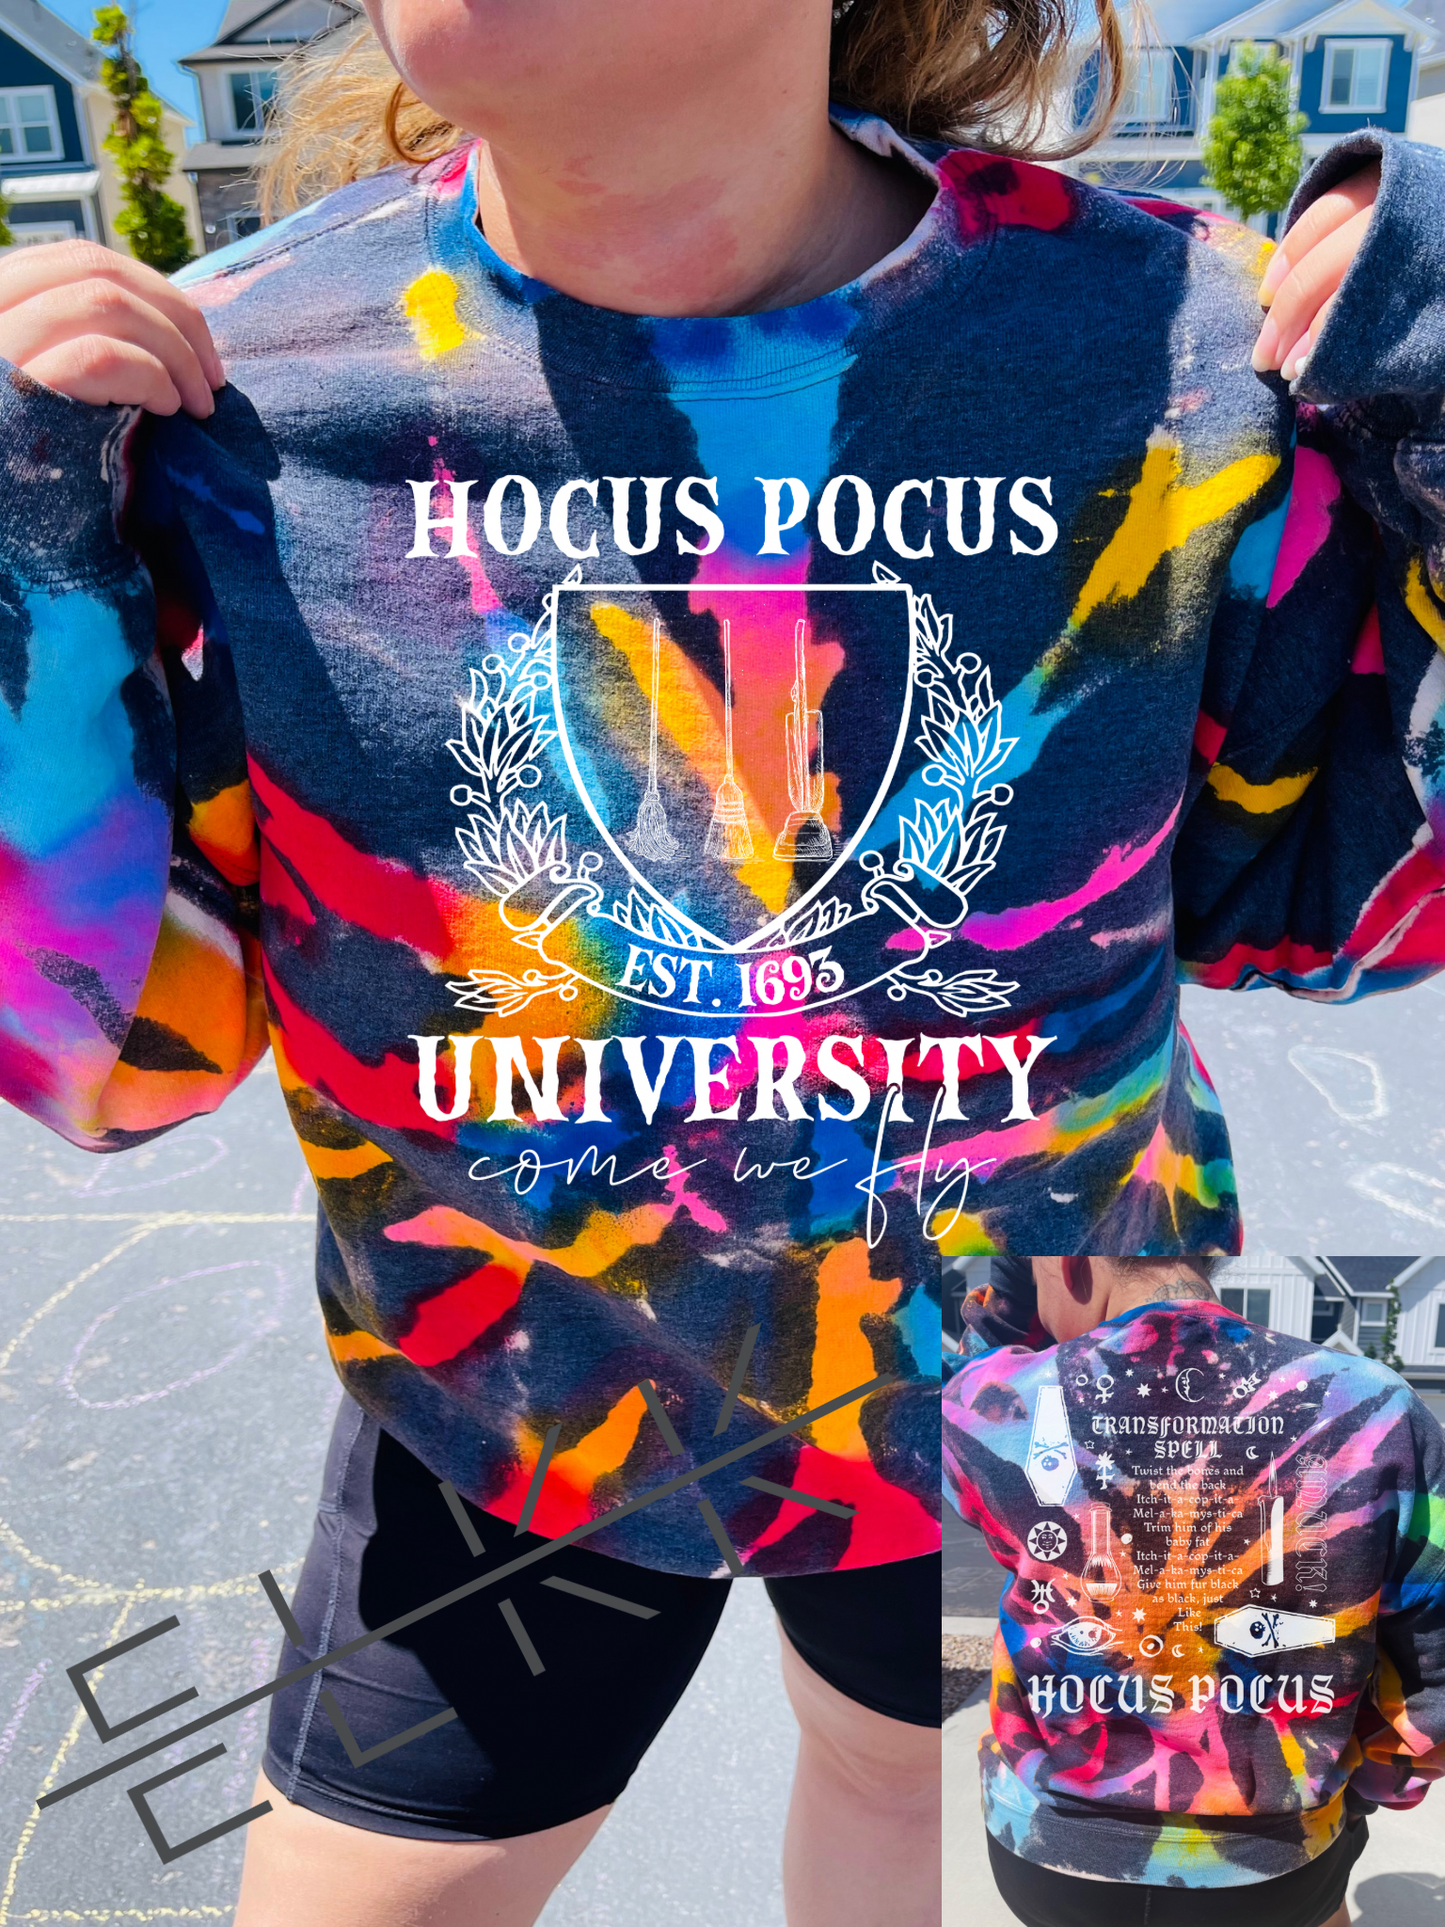 Hocus pocus university